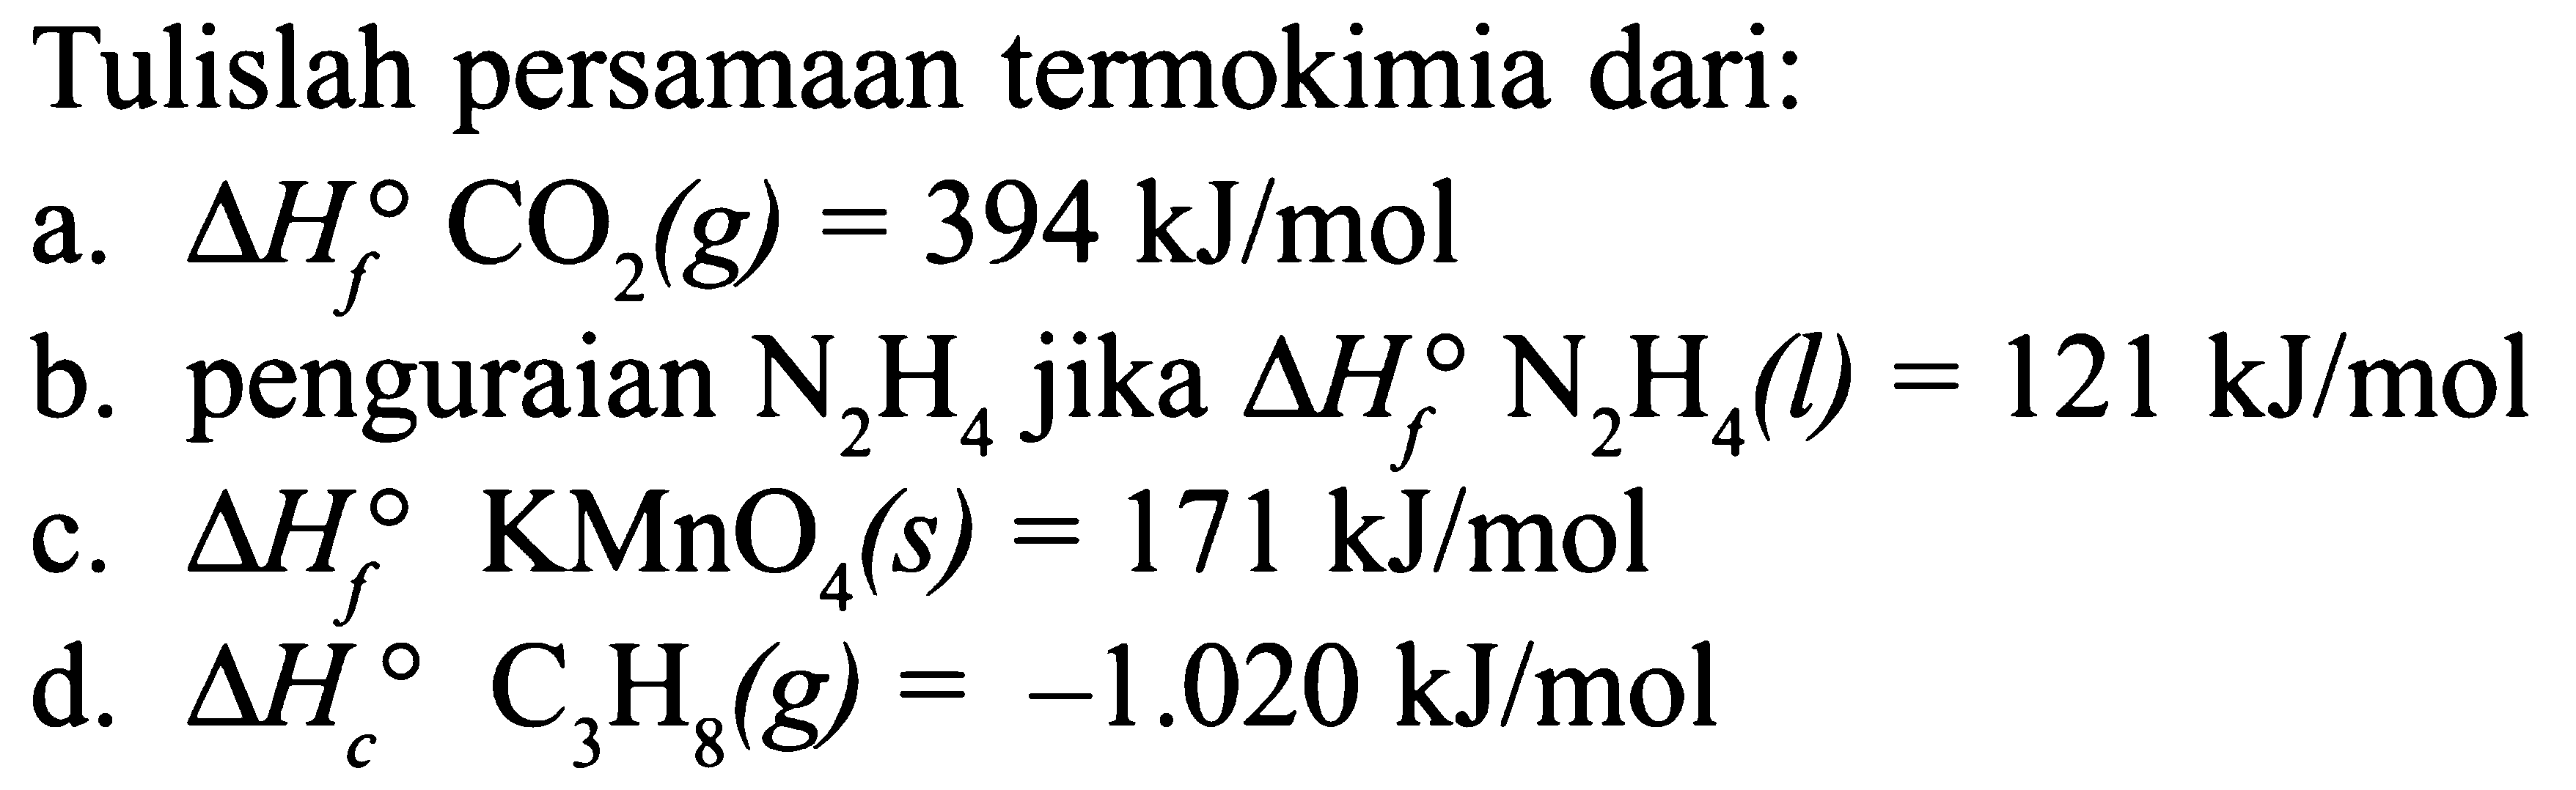 Tulislah persamaan termokimia dari: a. delta Hf C02 (g) = 394 kJ/mol b. penguraian N2H4 jika delta Hf N2H4 (l) = 121 kJ/mol c. delta Hf KMnO4 (s) = 171 kJ/mol d. delta Hc C3H8 (g) = -1.020 kJ/mol